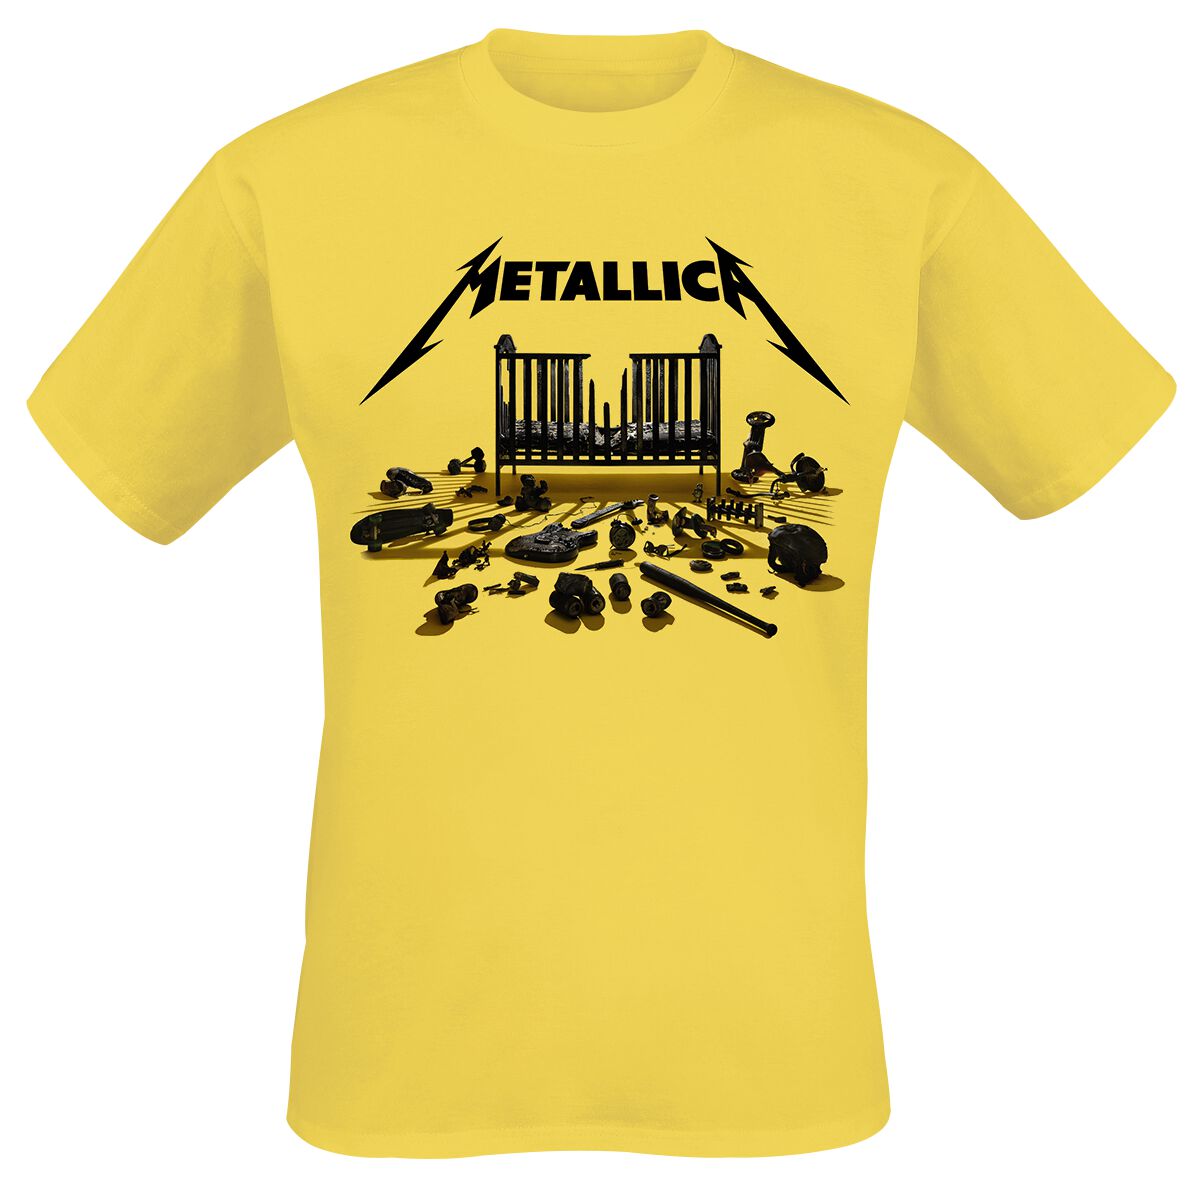 Metallica T-Shirt - Simplified Cover (M72) - S bis 3XL - für Männer - Größe 3XL - gelb  - Lizenziertes Merchandise!